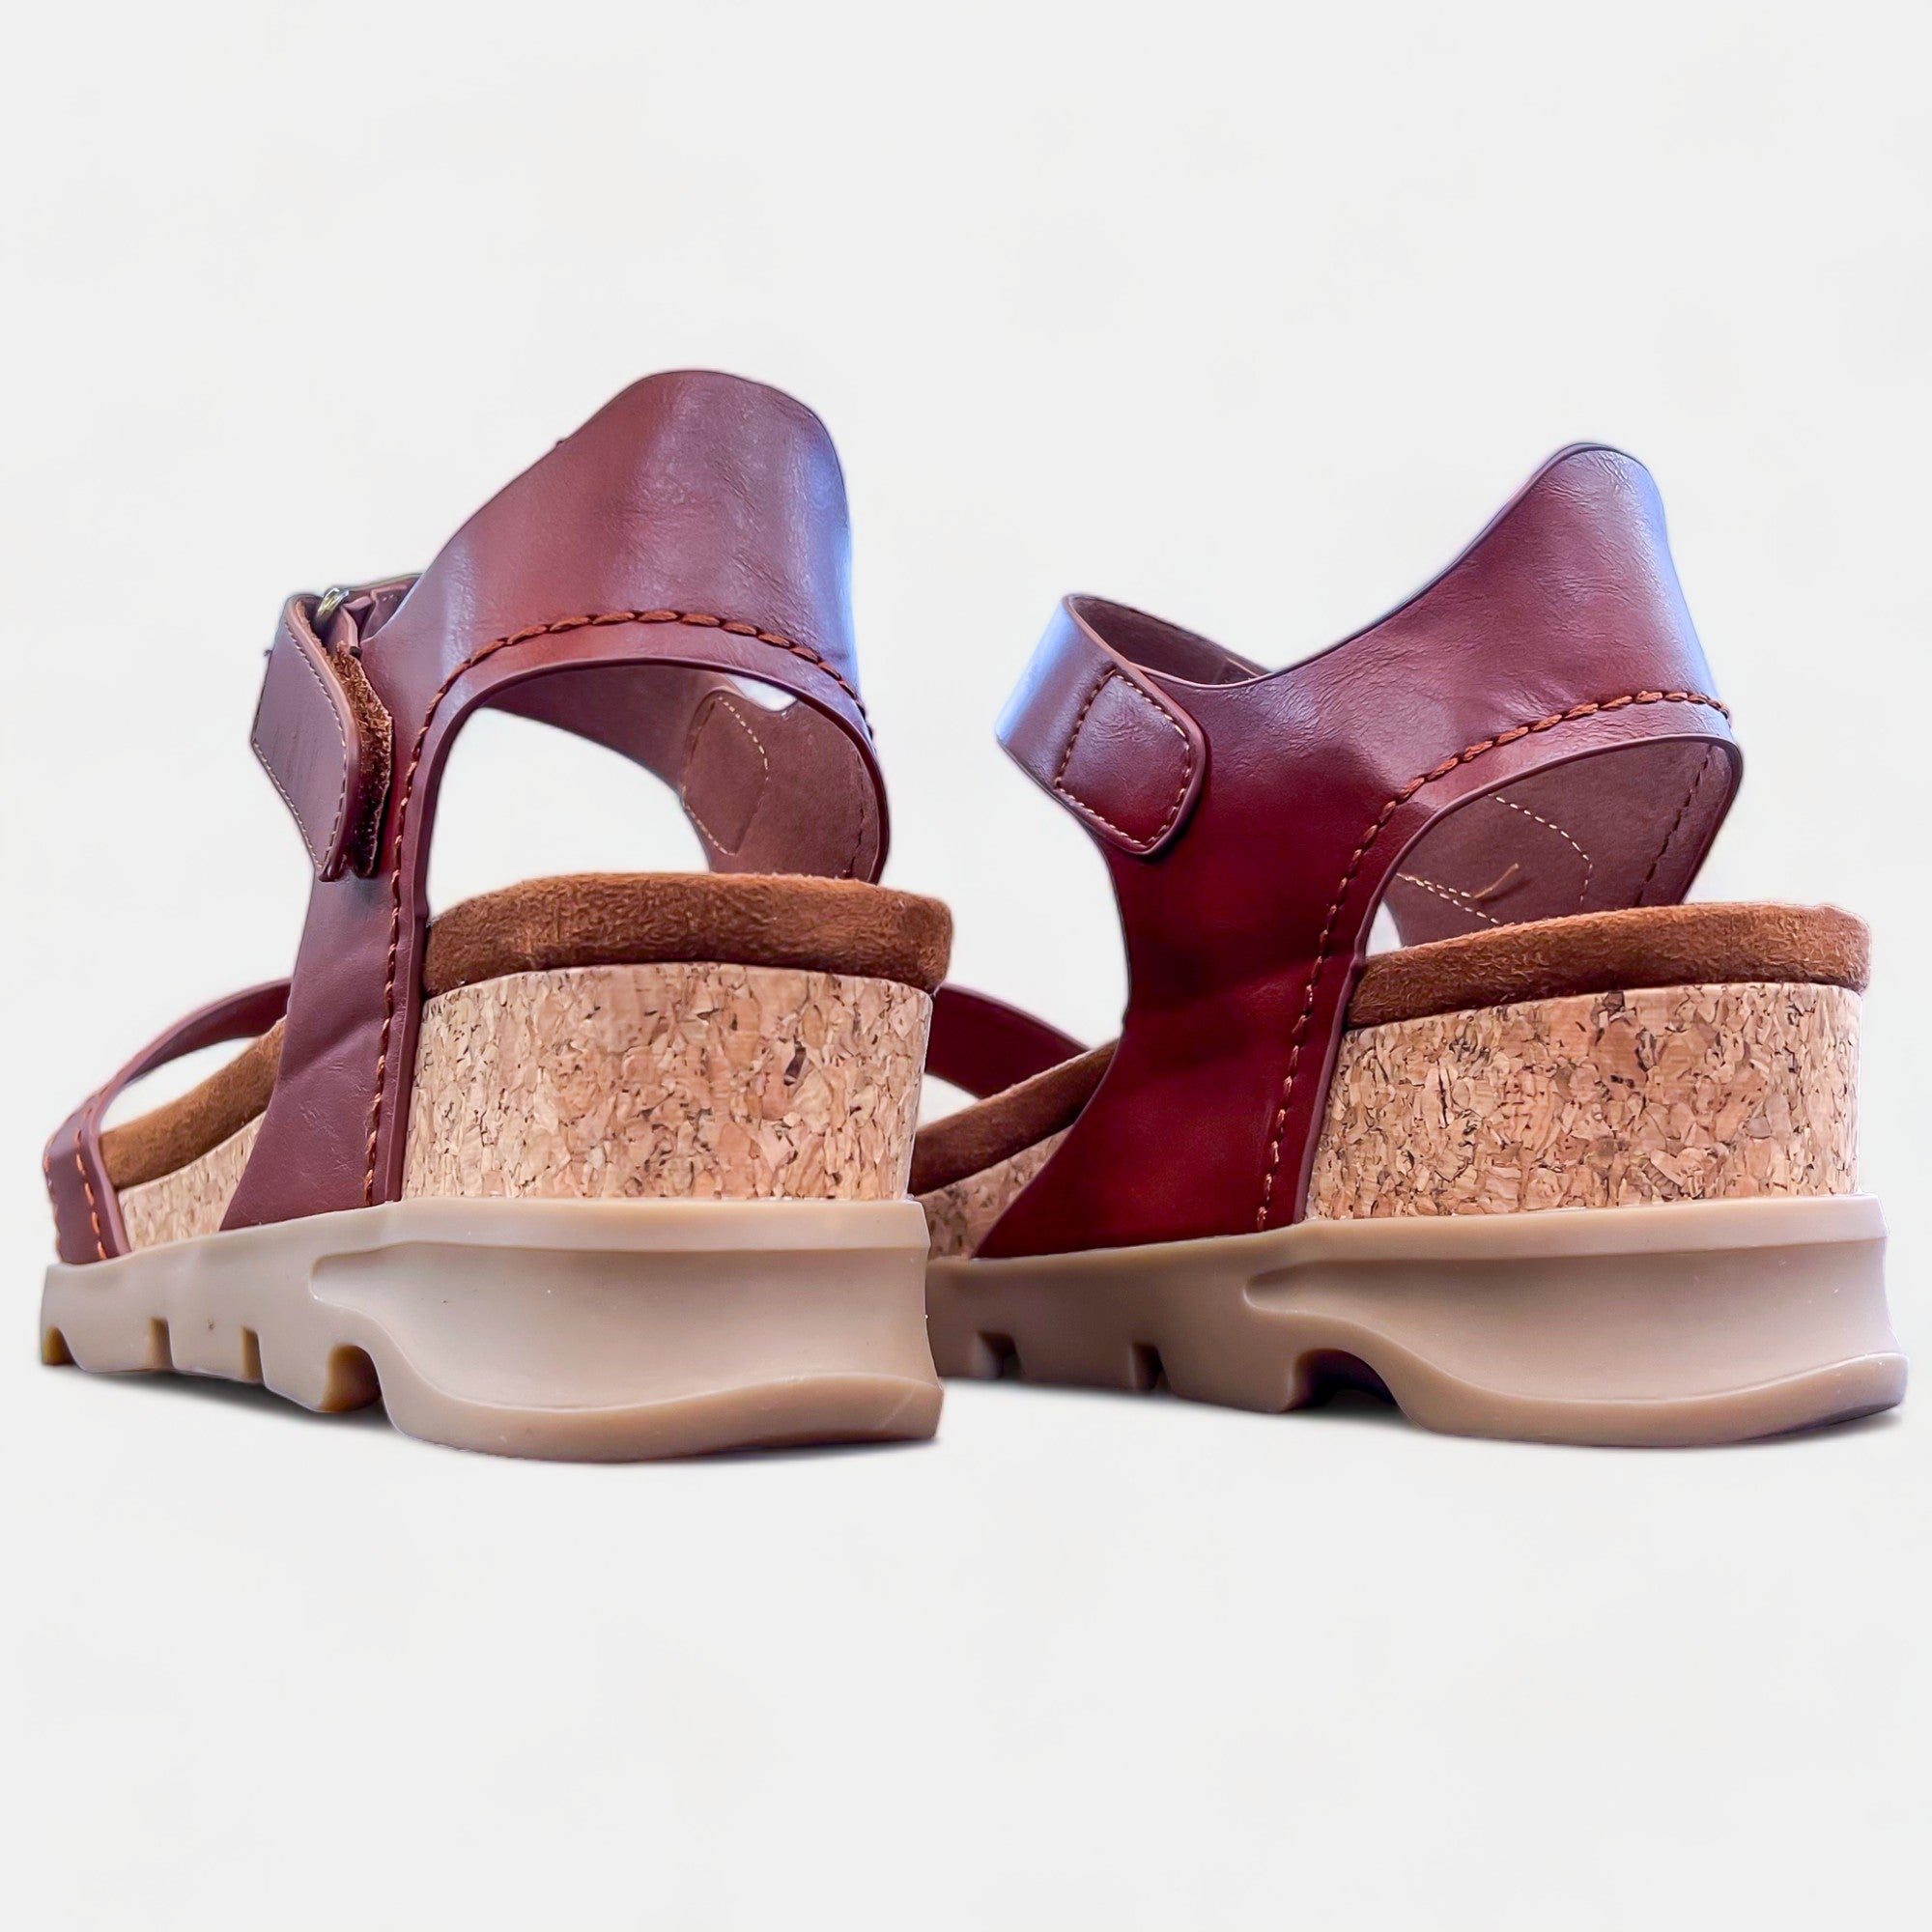 Paaduks Men's Brown SKO Cork Sandals - 6 UK : Amazon.in: Fashion